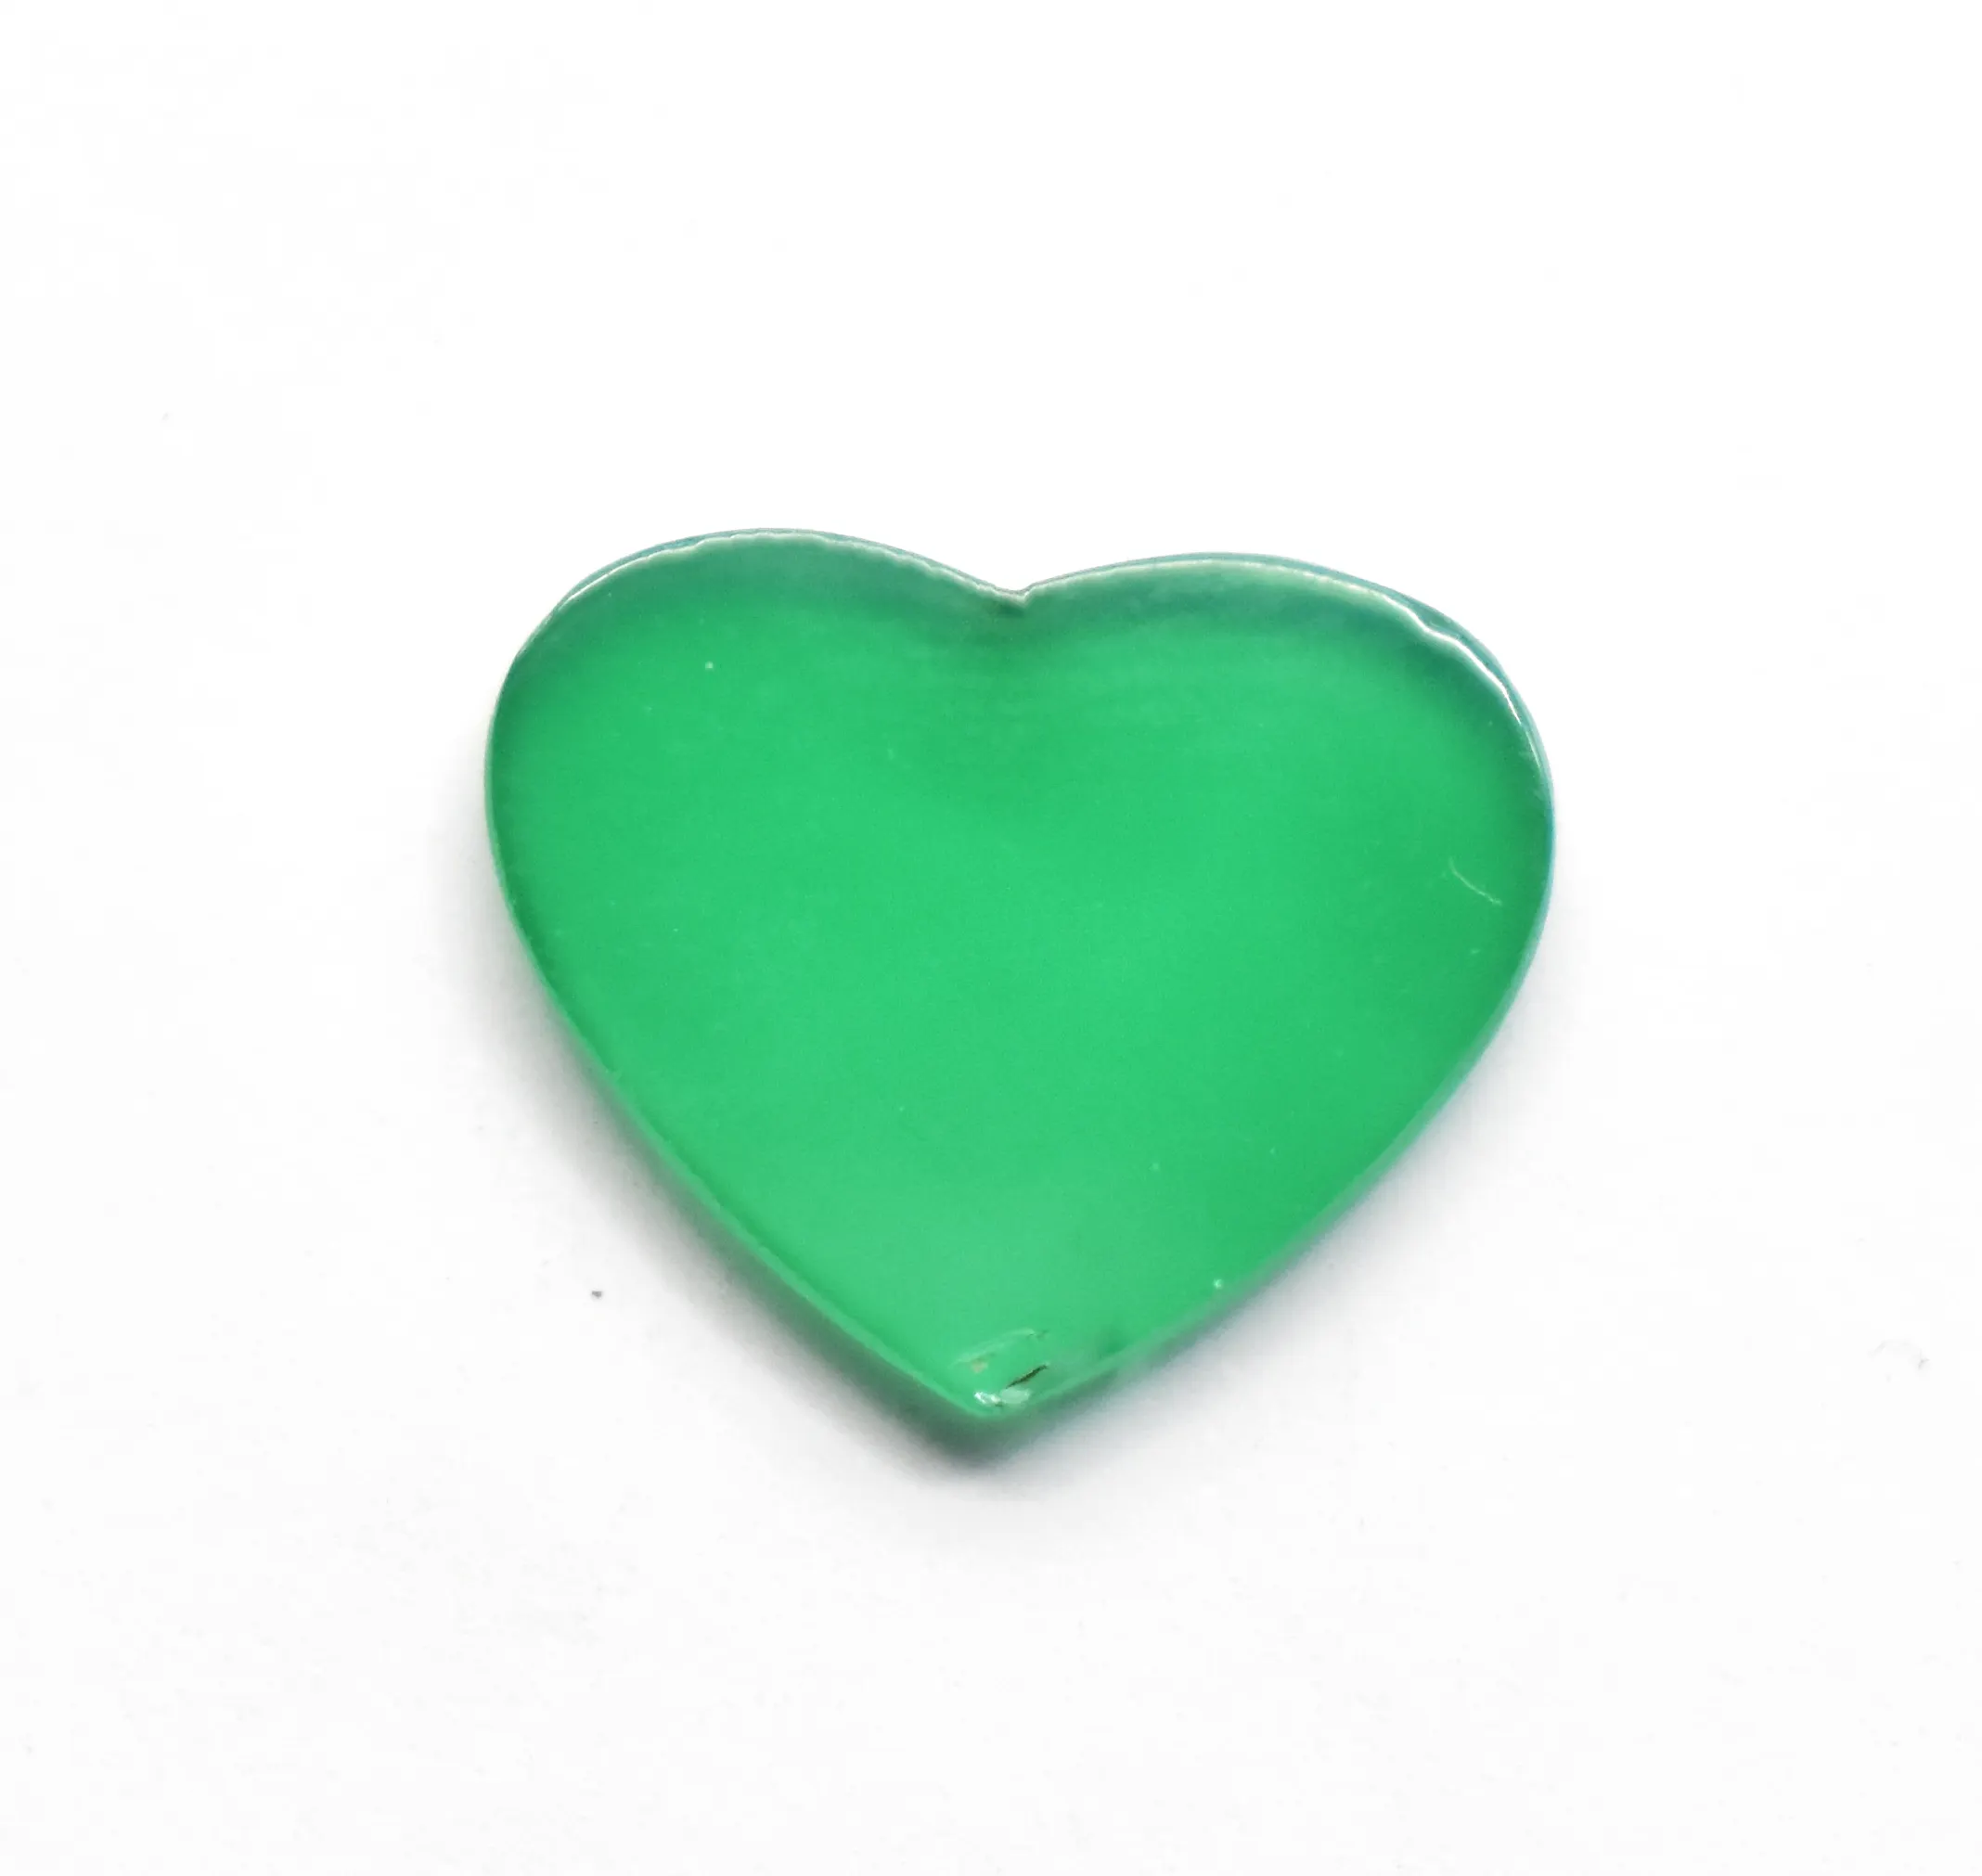 Forma de corazón de ónix verde natural Plano Ambos tamaños 16X13X2mm Todos los tamaños están disponibles Tamaño aproximado Cristales de piedras preciosas sueltas ÁGATA VERDE